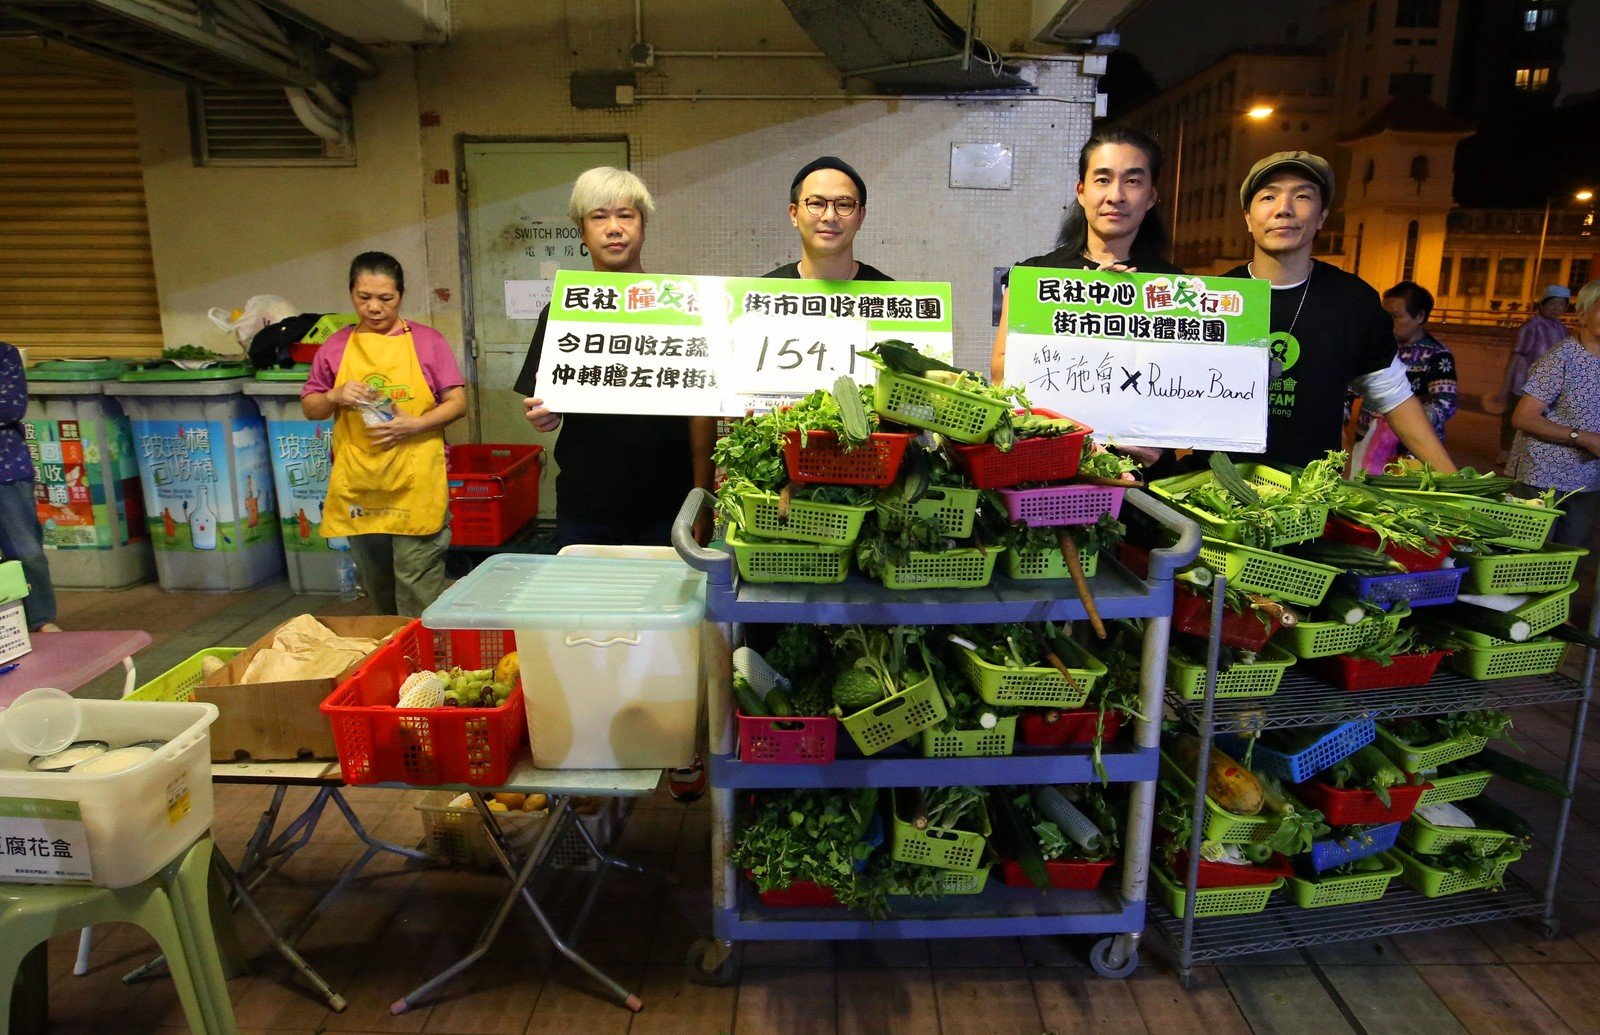 (左至右) 乐队RubberBand 成员泥鯭、6号、阿正、阿伟，早前支持乐施会的倡议及公众教育活动「公平咩」，体验剩菜回收，认识香港社会的丰盛和匮乏。